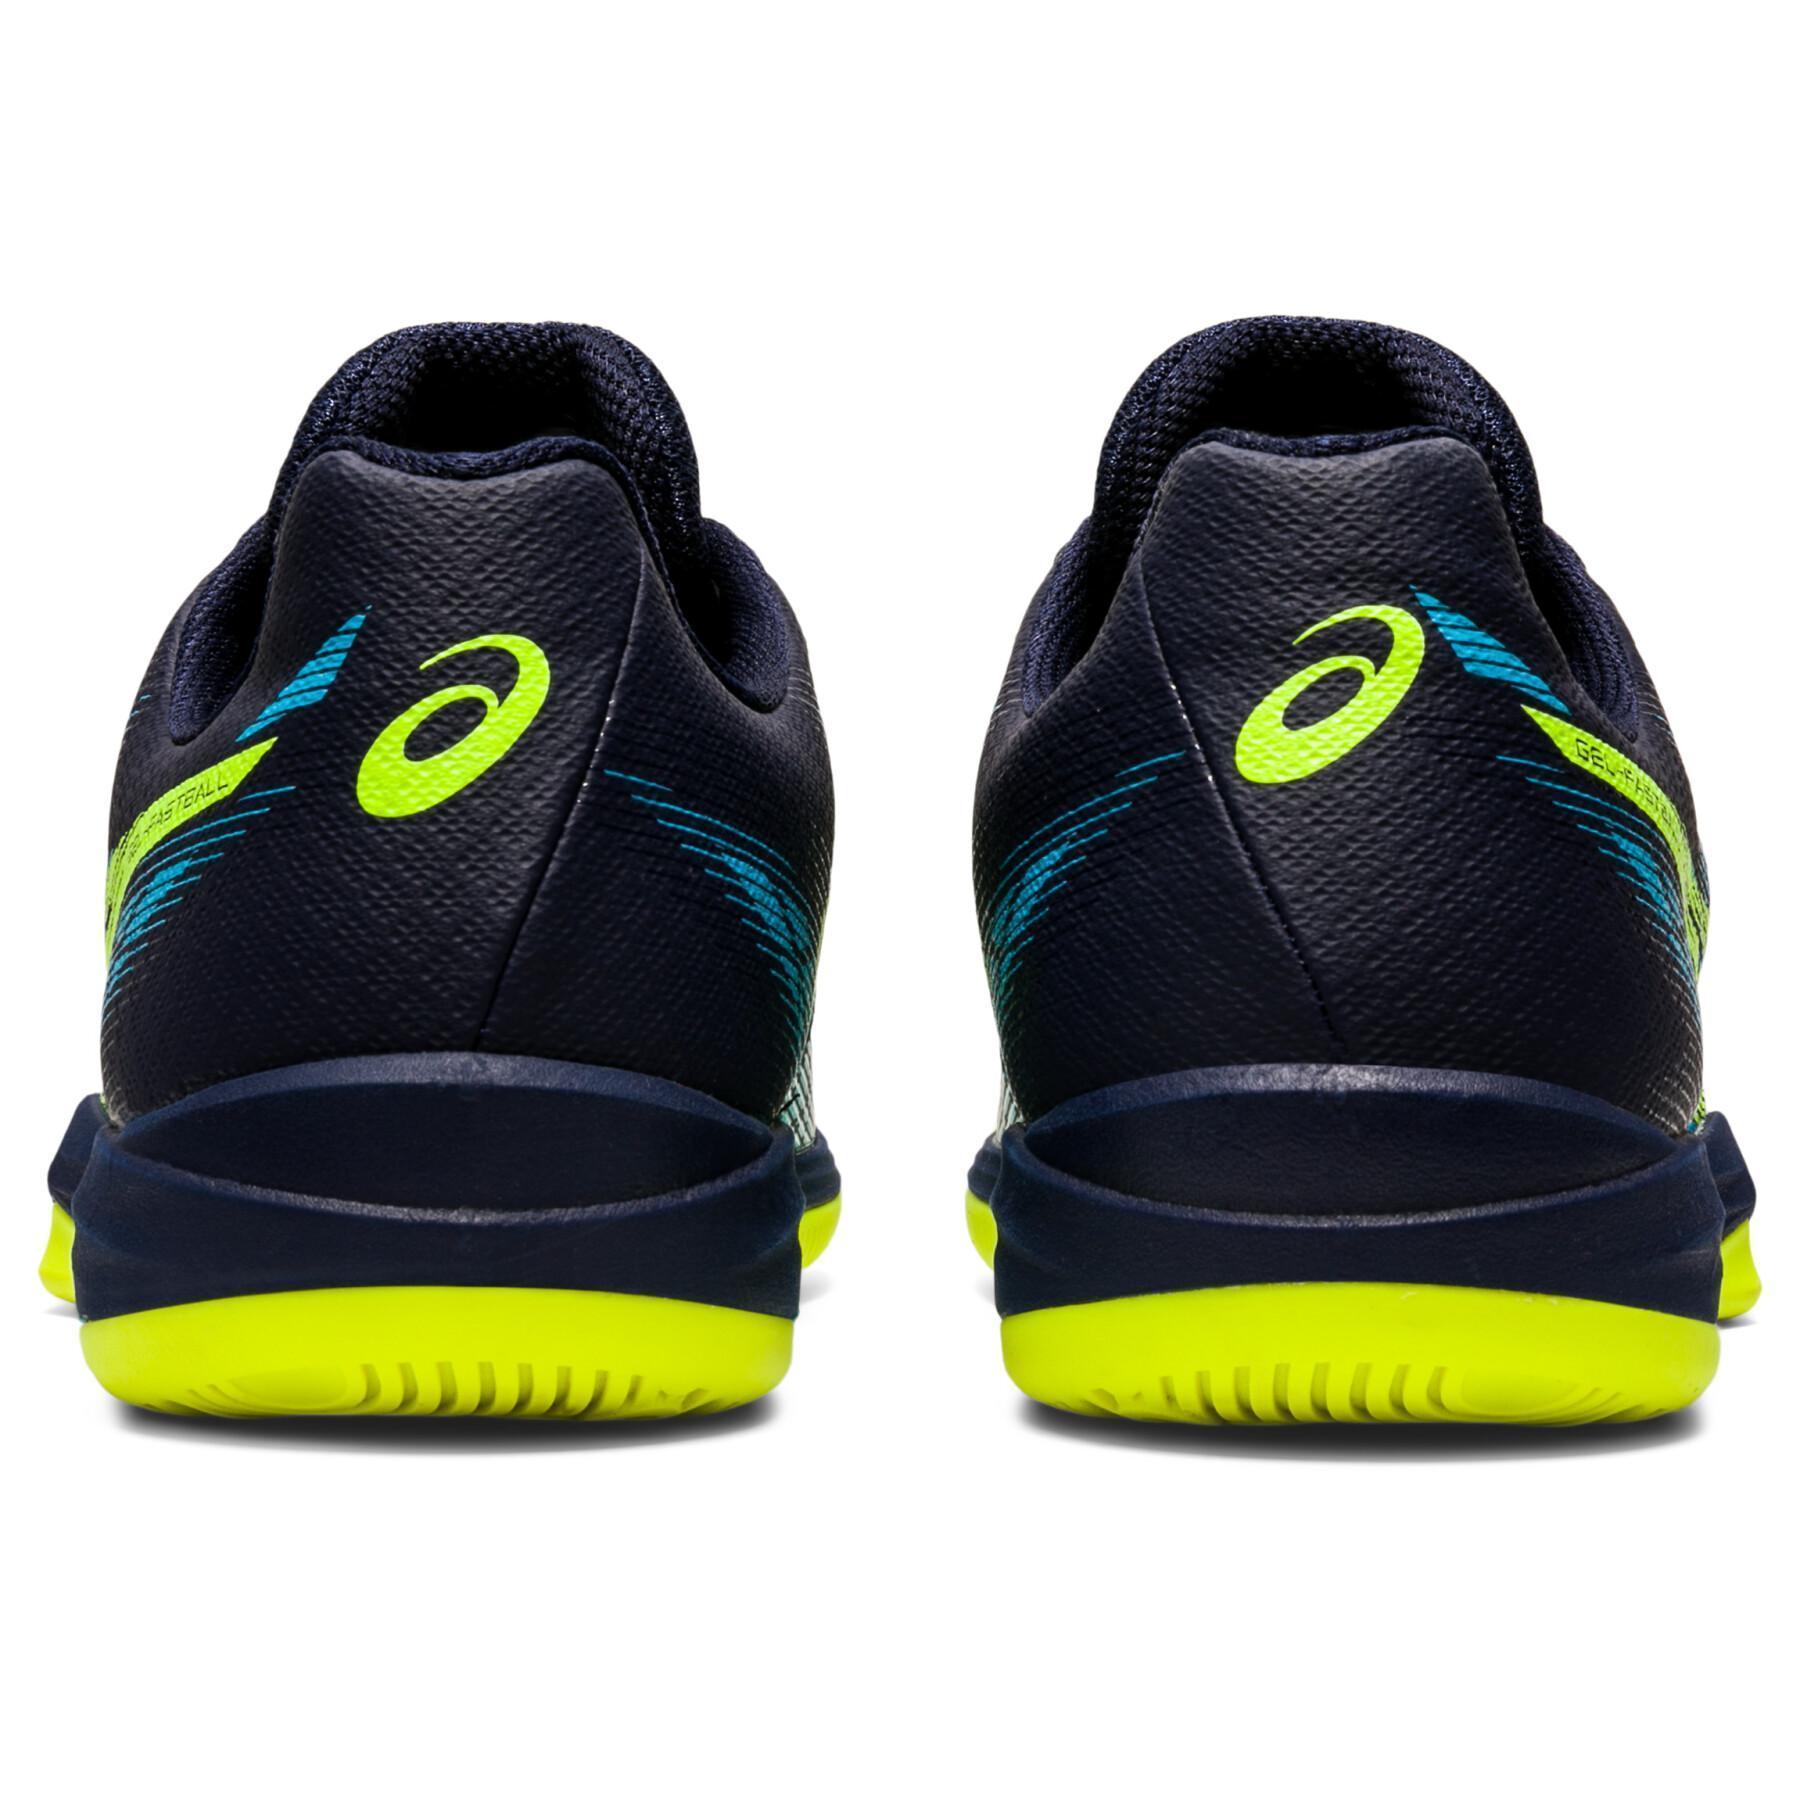 Zapatos de interior Asics Gel-Fastball 3